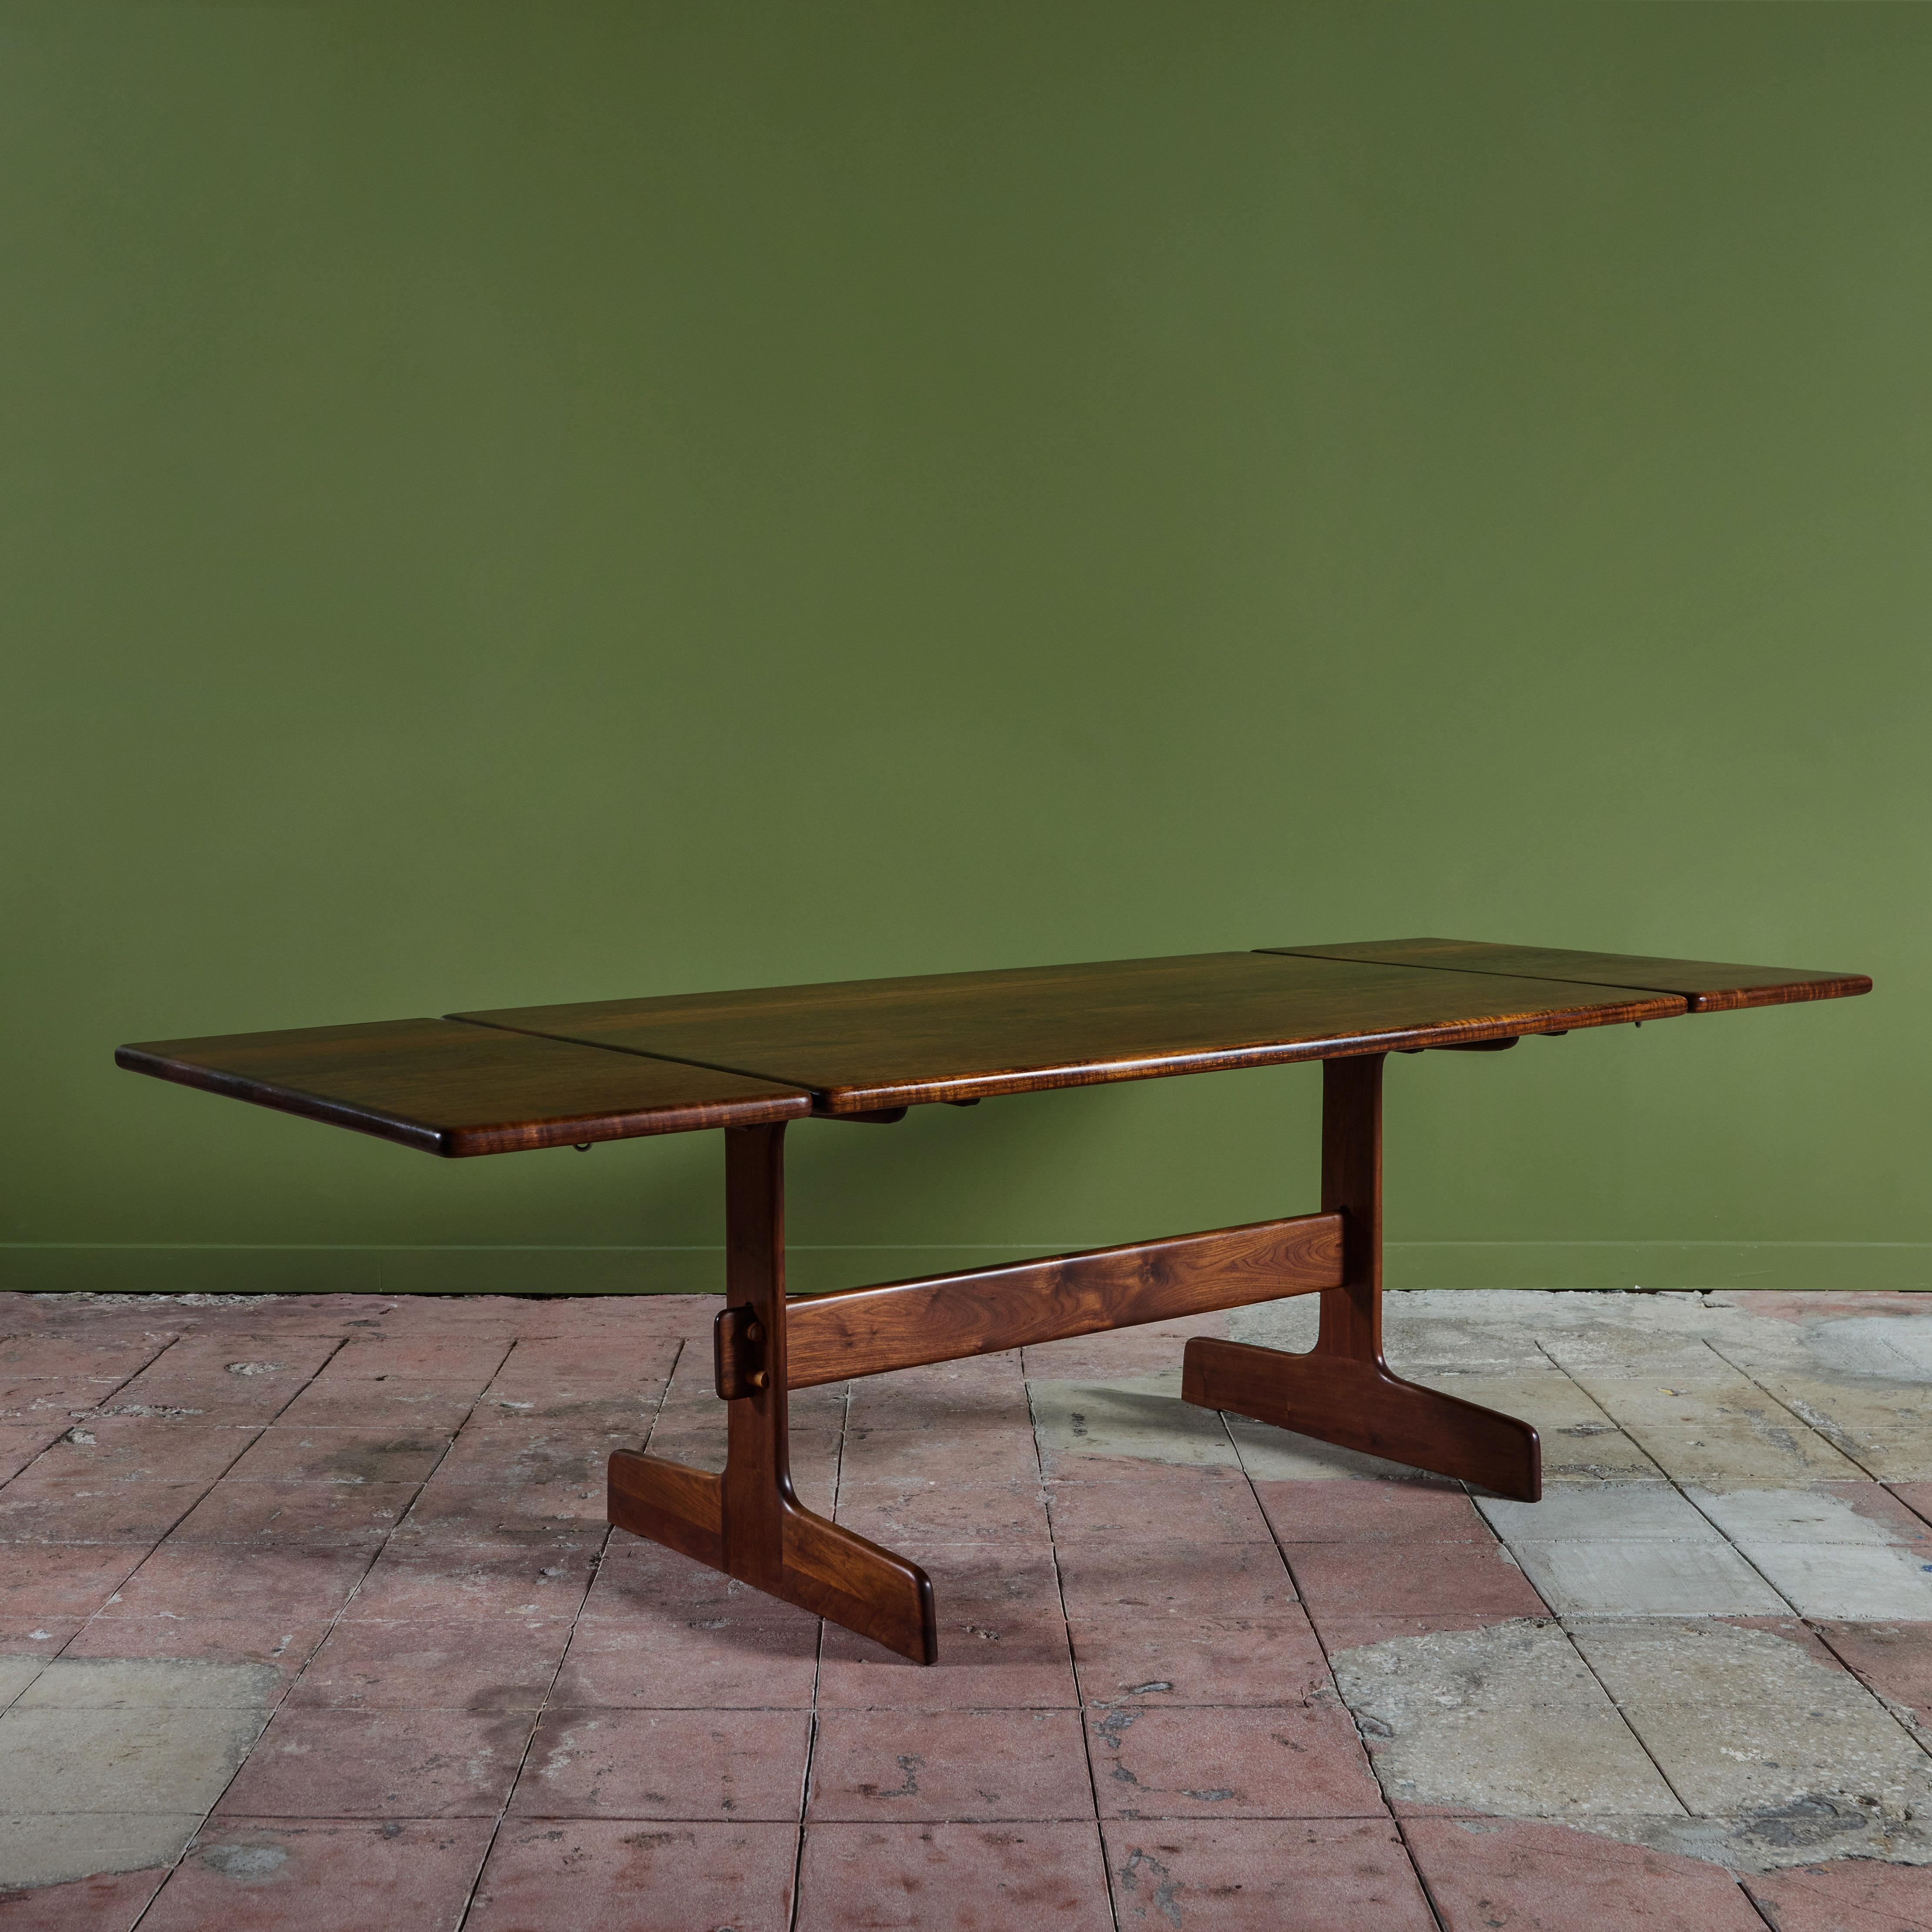 Table de salle à manger en bois Shedua du designer américain Gerald McCabe pour Eon Furniture, c.C. années 1970. La table en bois massif possède deux allonges qui se fixent à chaque extrémité de la table.
La table est superbement assortie aux bancs